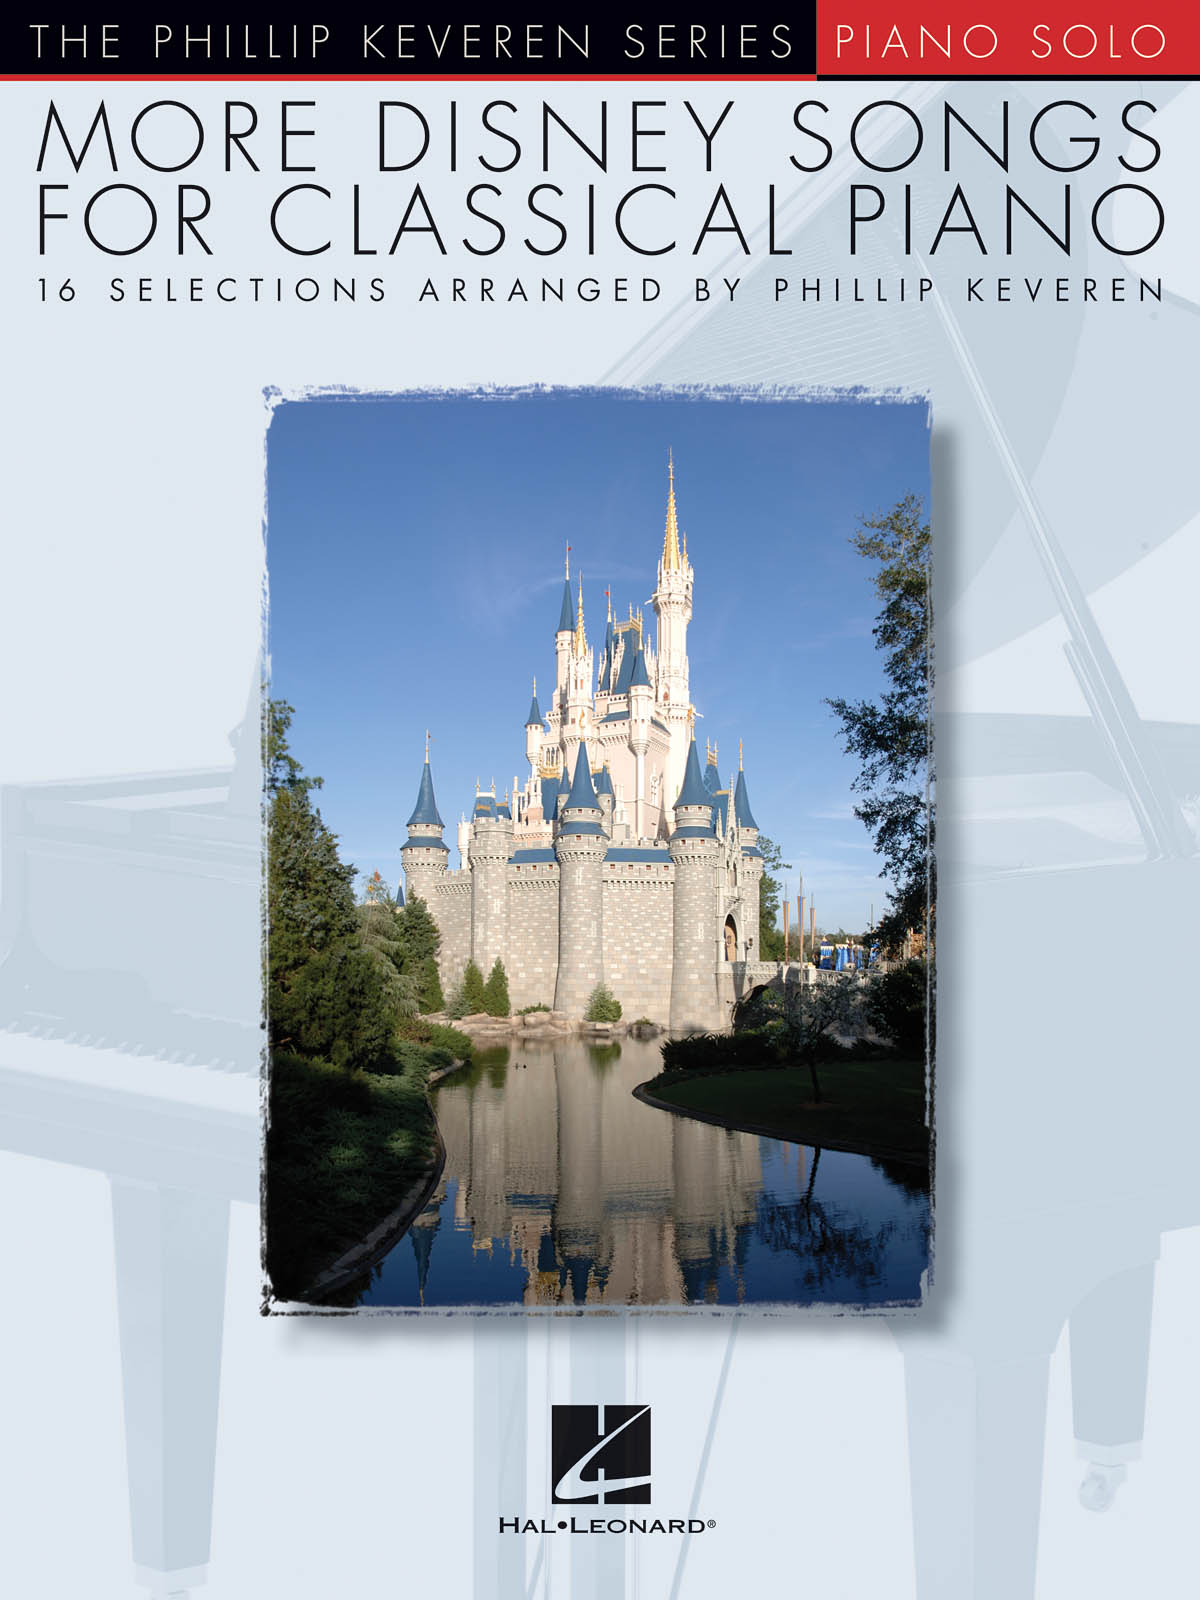 More Disney Songs For Classical Piano - The Phillip Keveren Series známé písně pro klavír